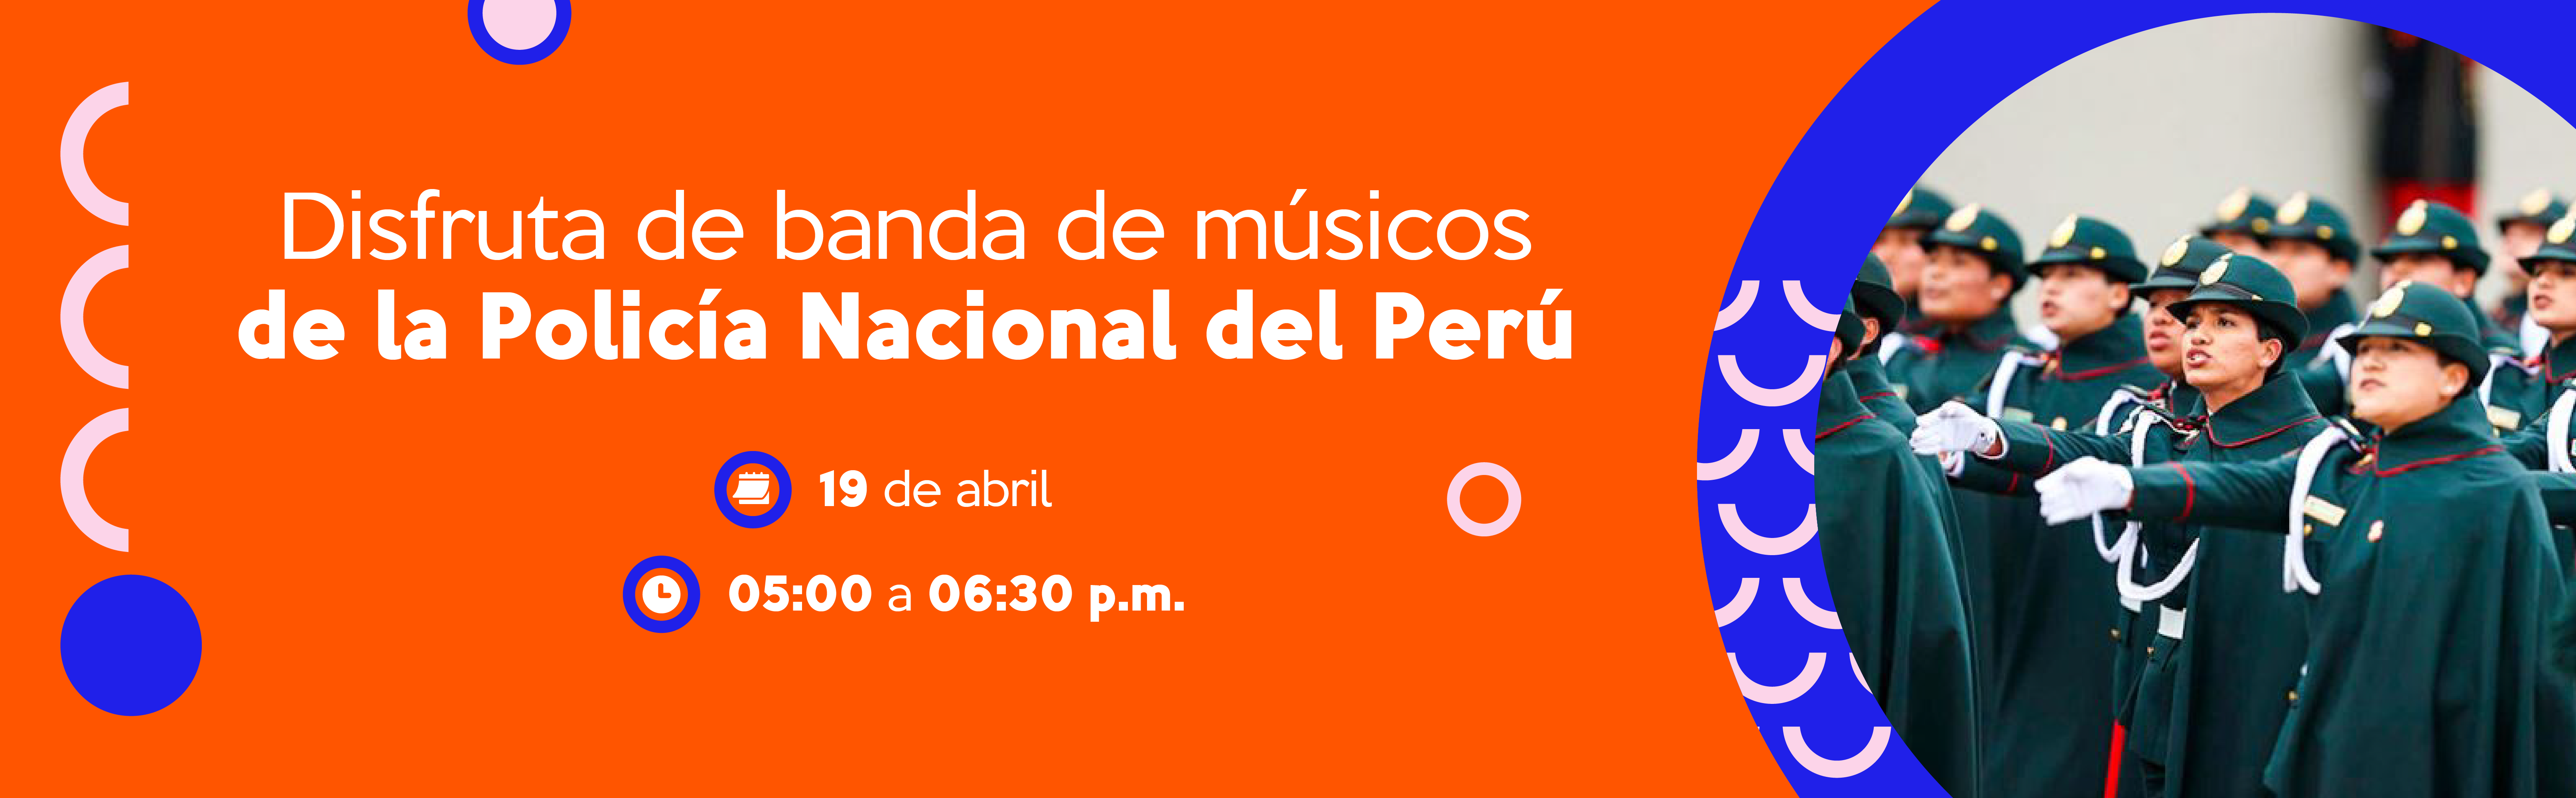 Disfruta de banda de músicos de la Policía Nacional del Perú